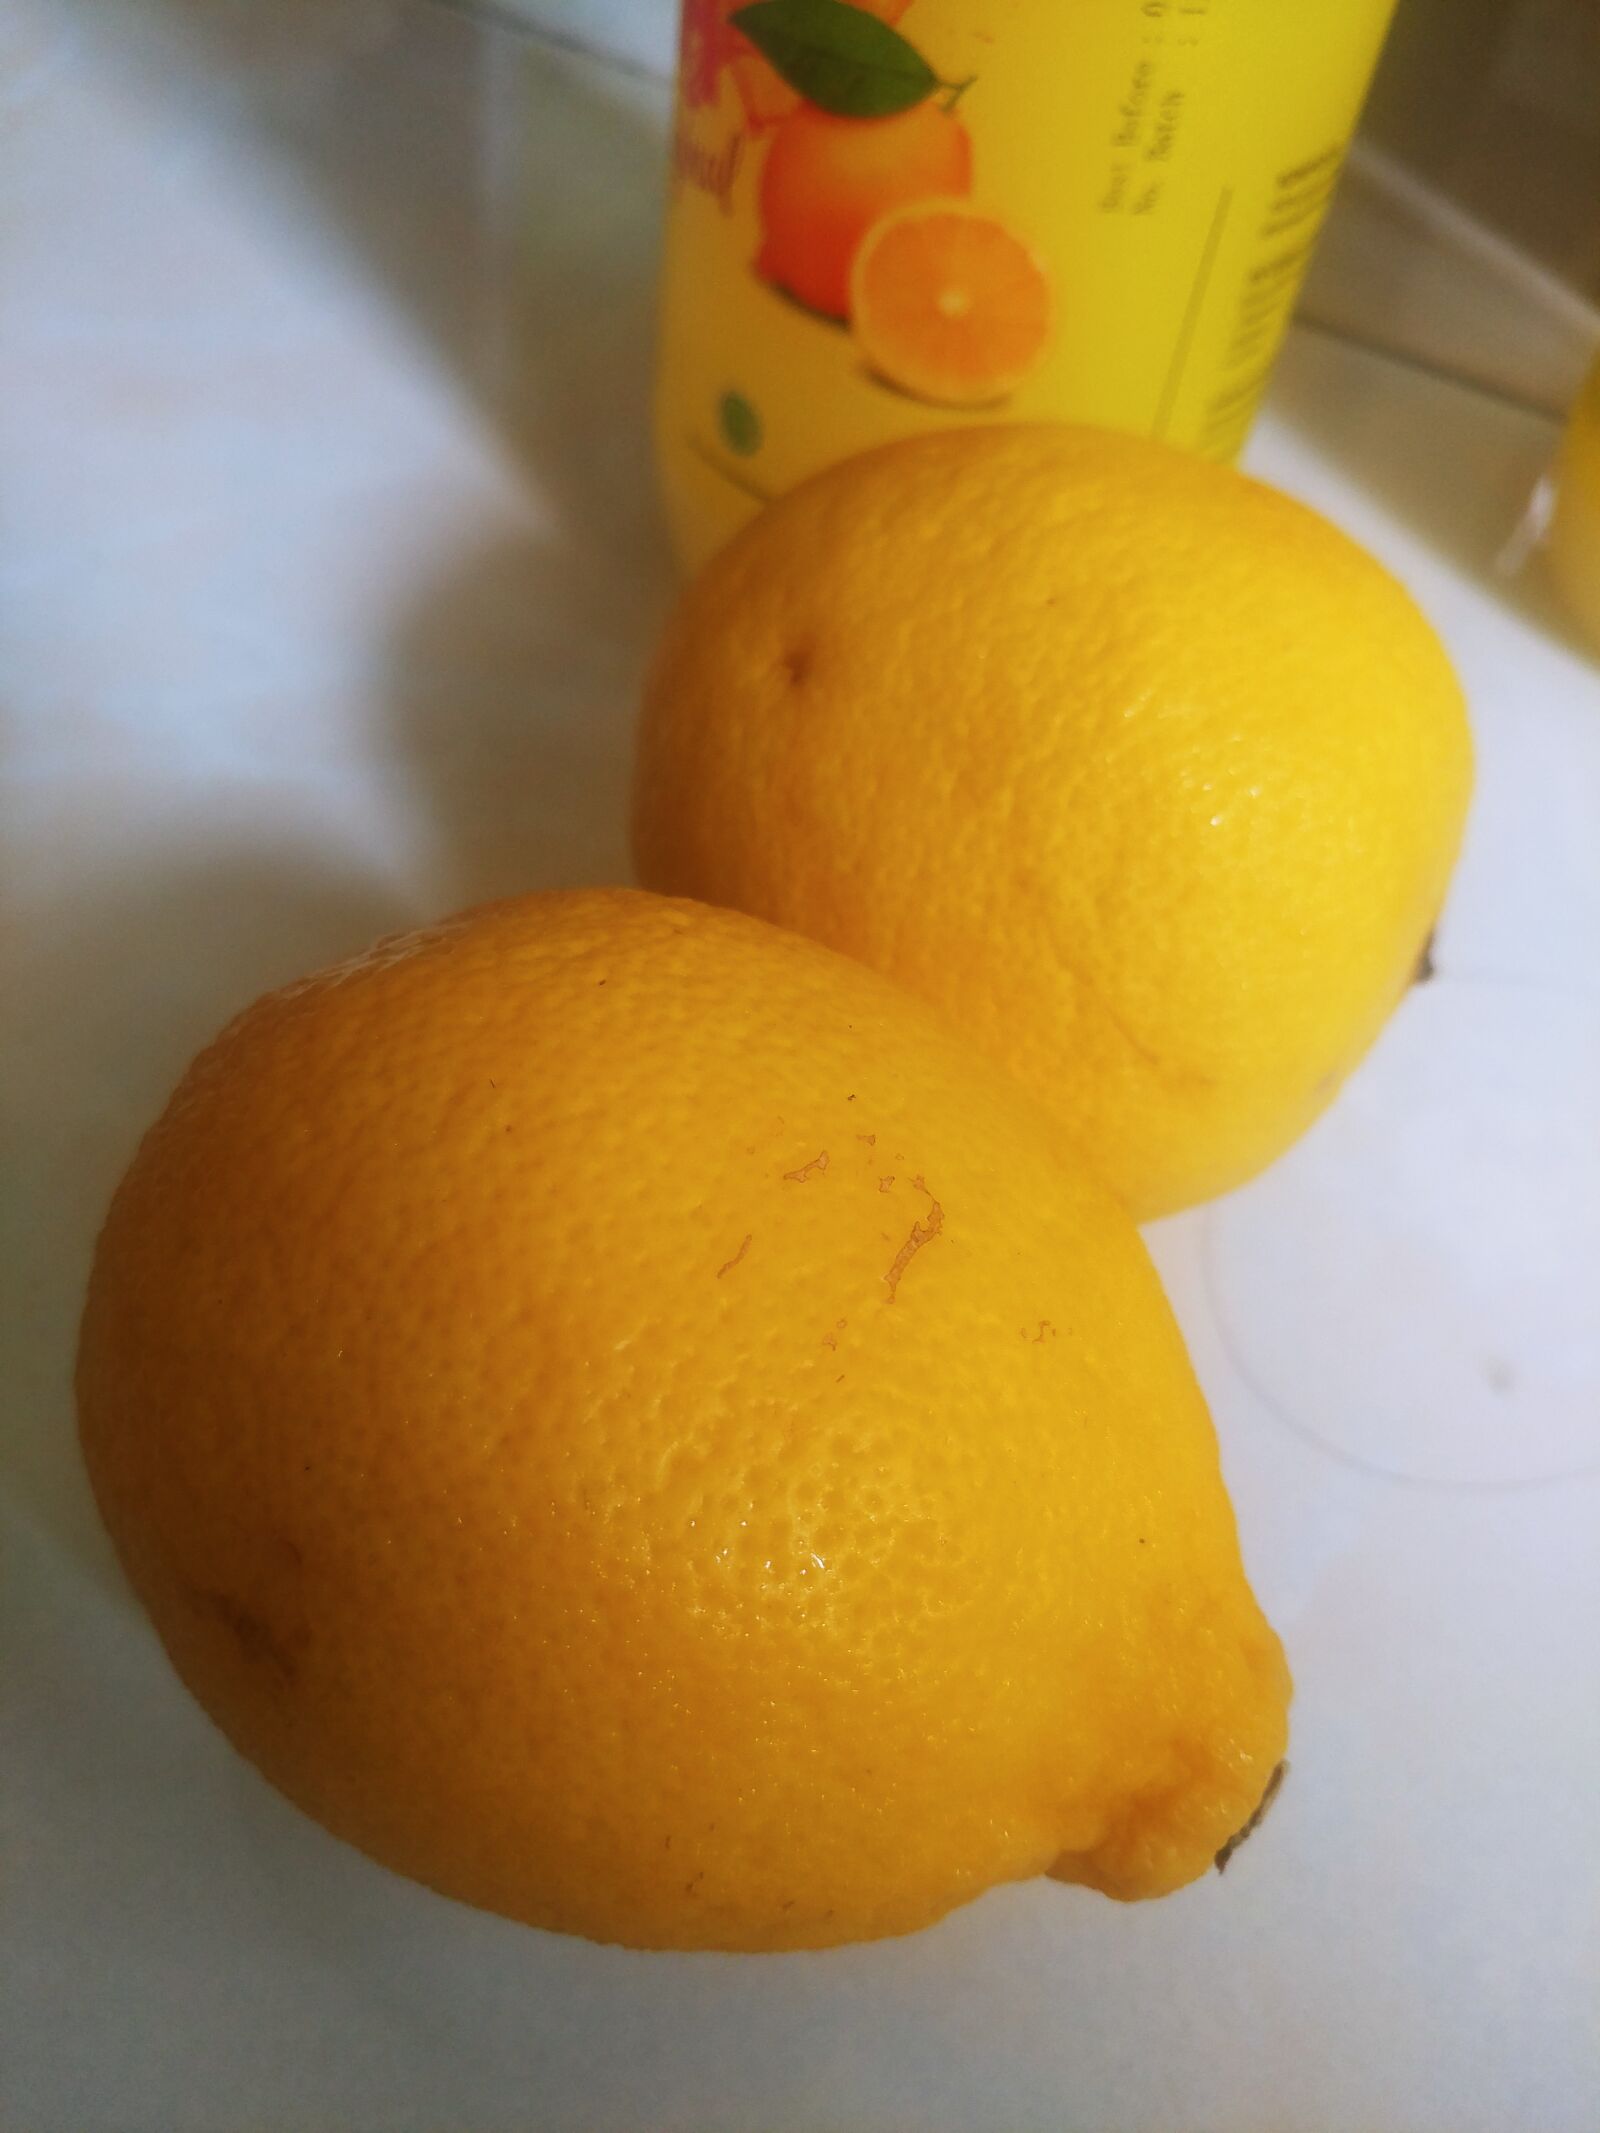 LG V20 sample photo. Lemon, orange, fruit photography